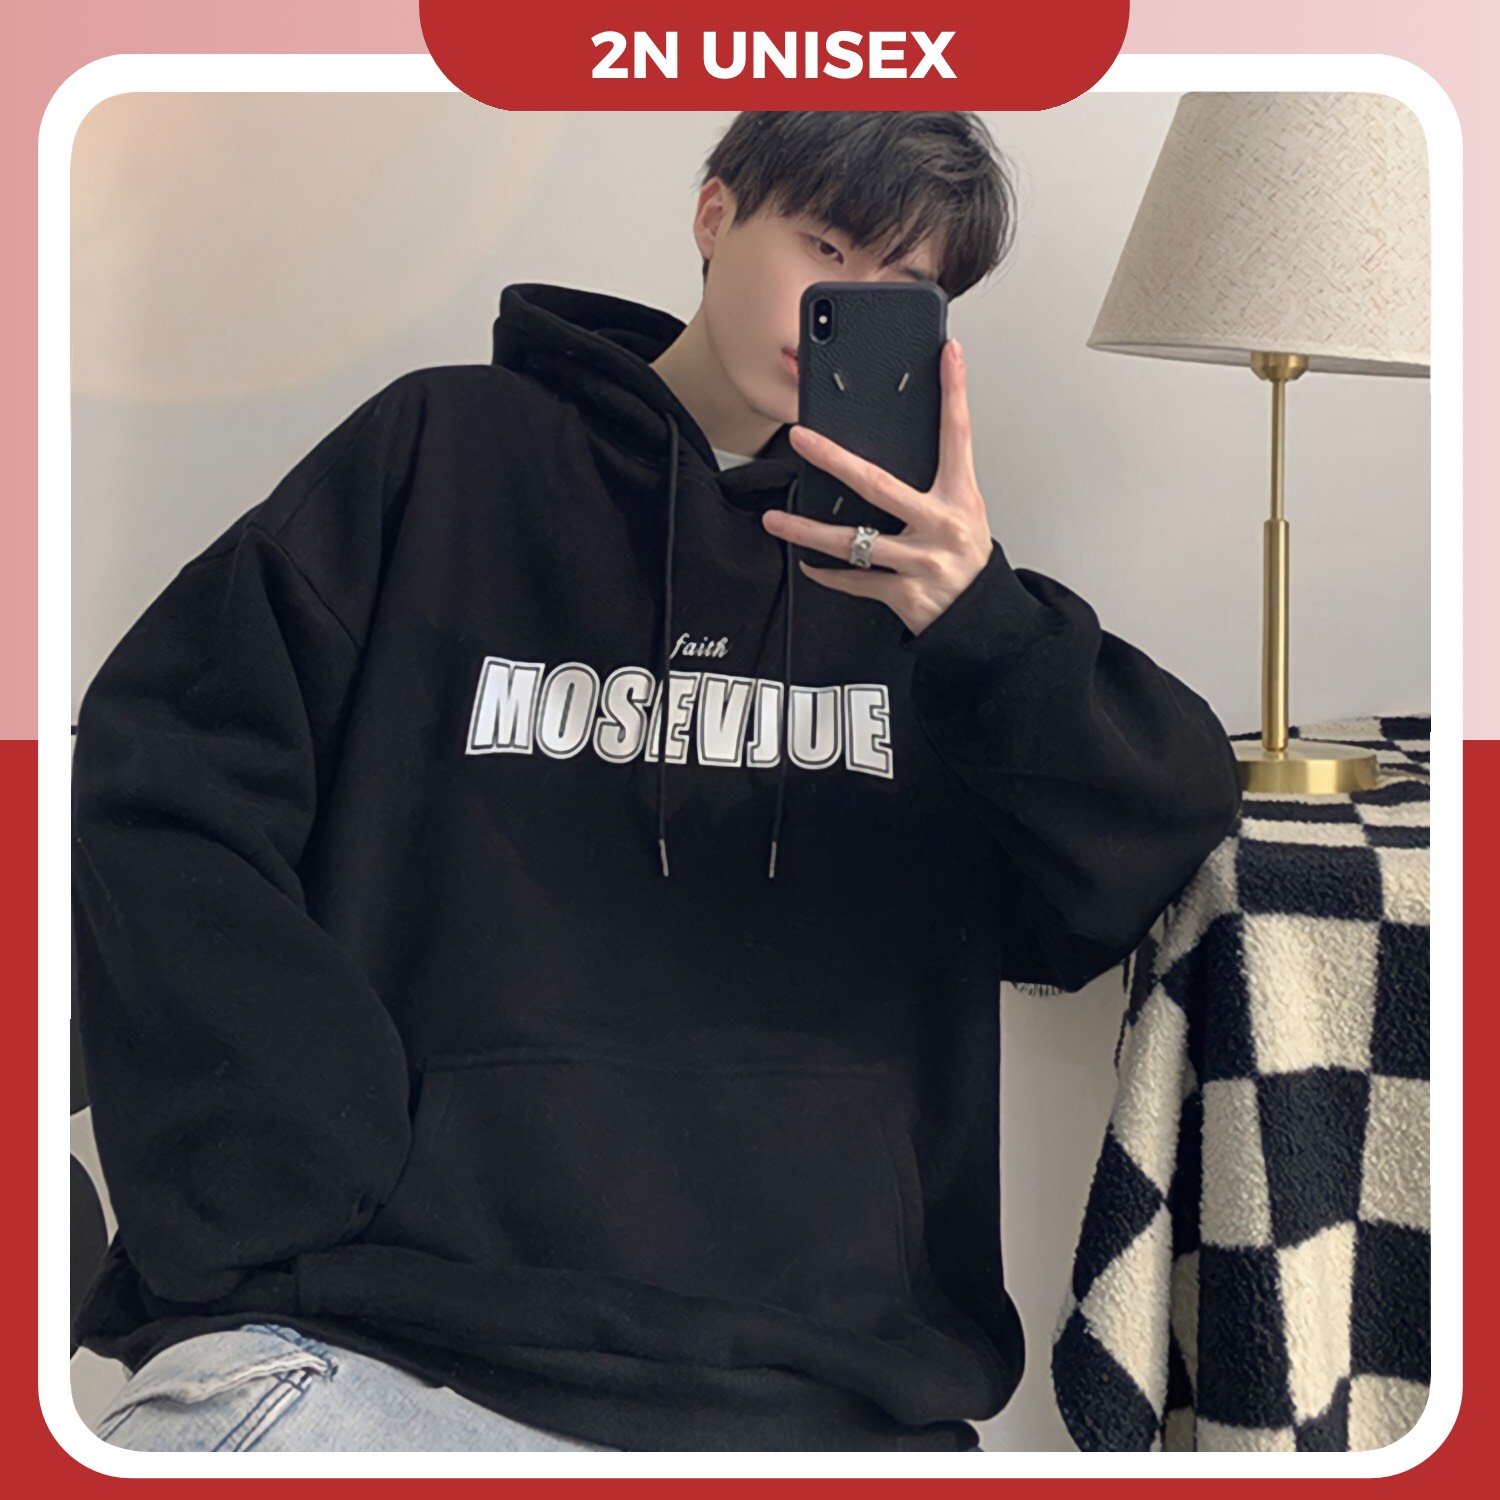 Áo khoác nỉ bông cotton dày mịn - hoodie form rộng unisex mosevjue - 2N Unisex - Đen